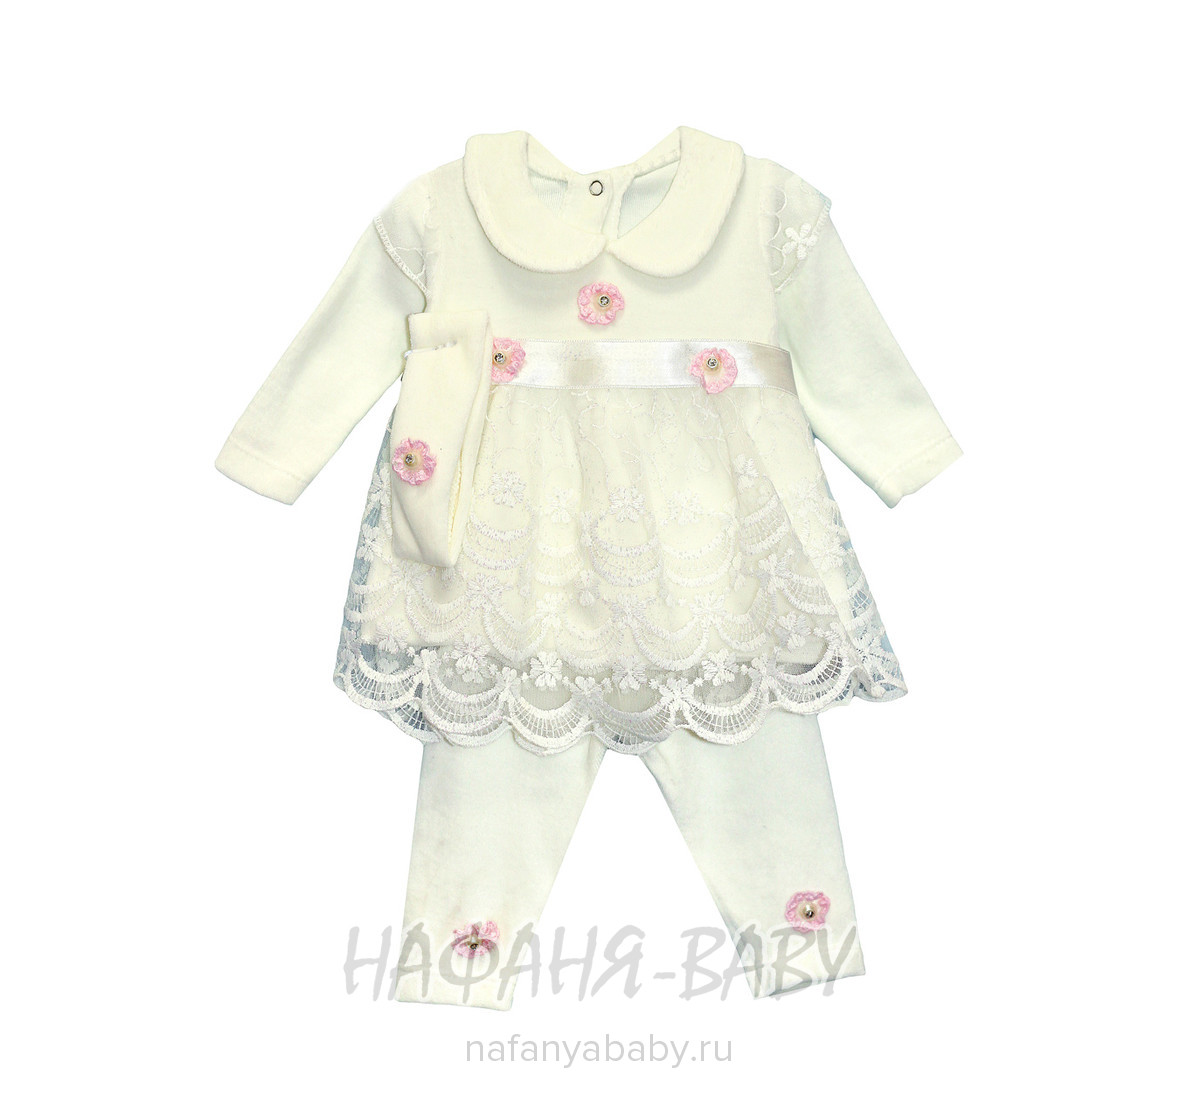 Детский костюм для новорожденных FINDIK арт: 69002, 0-12 мес, цвет молочный с розовым, оптом Турция